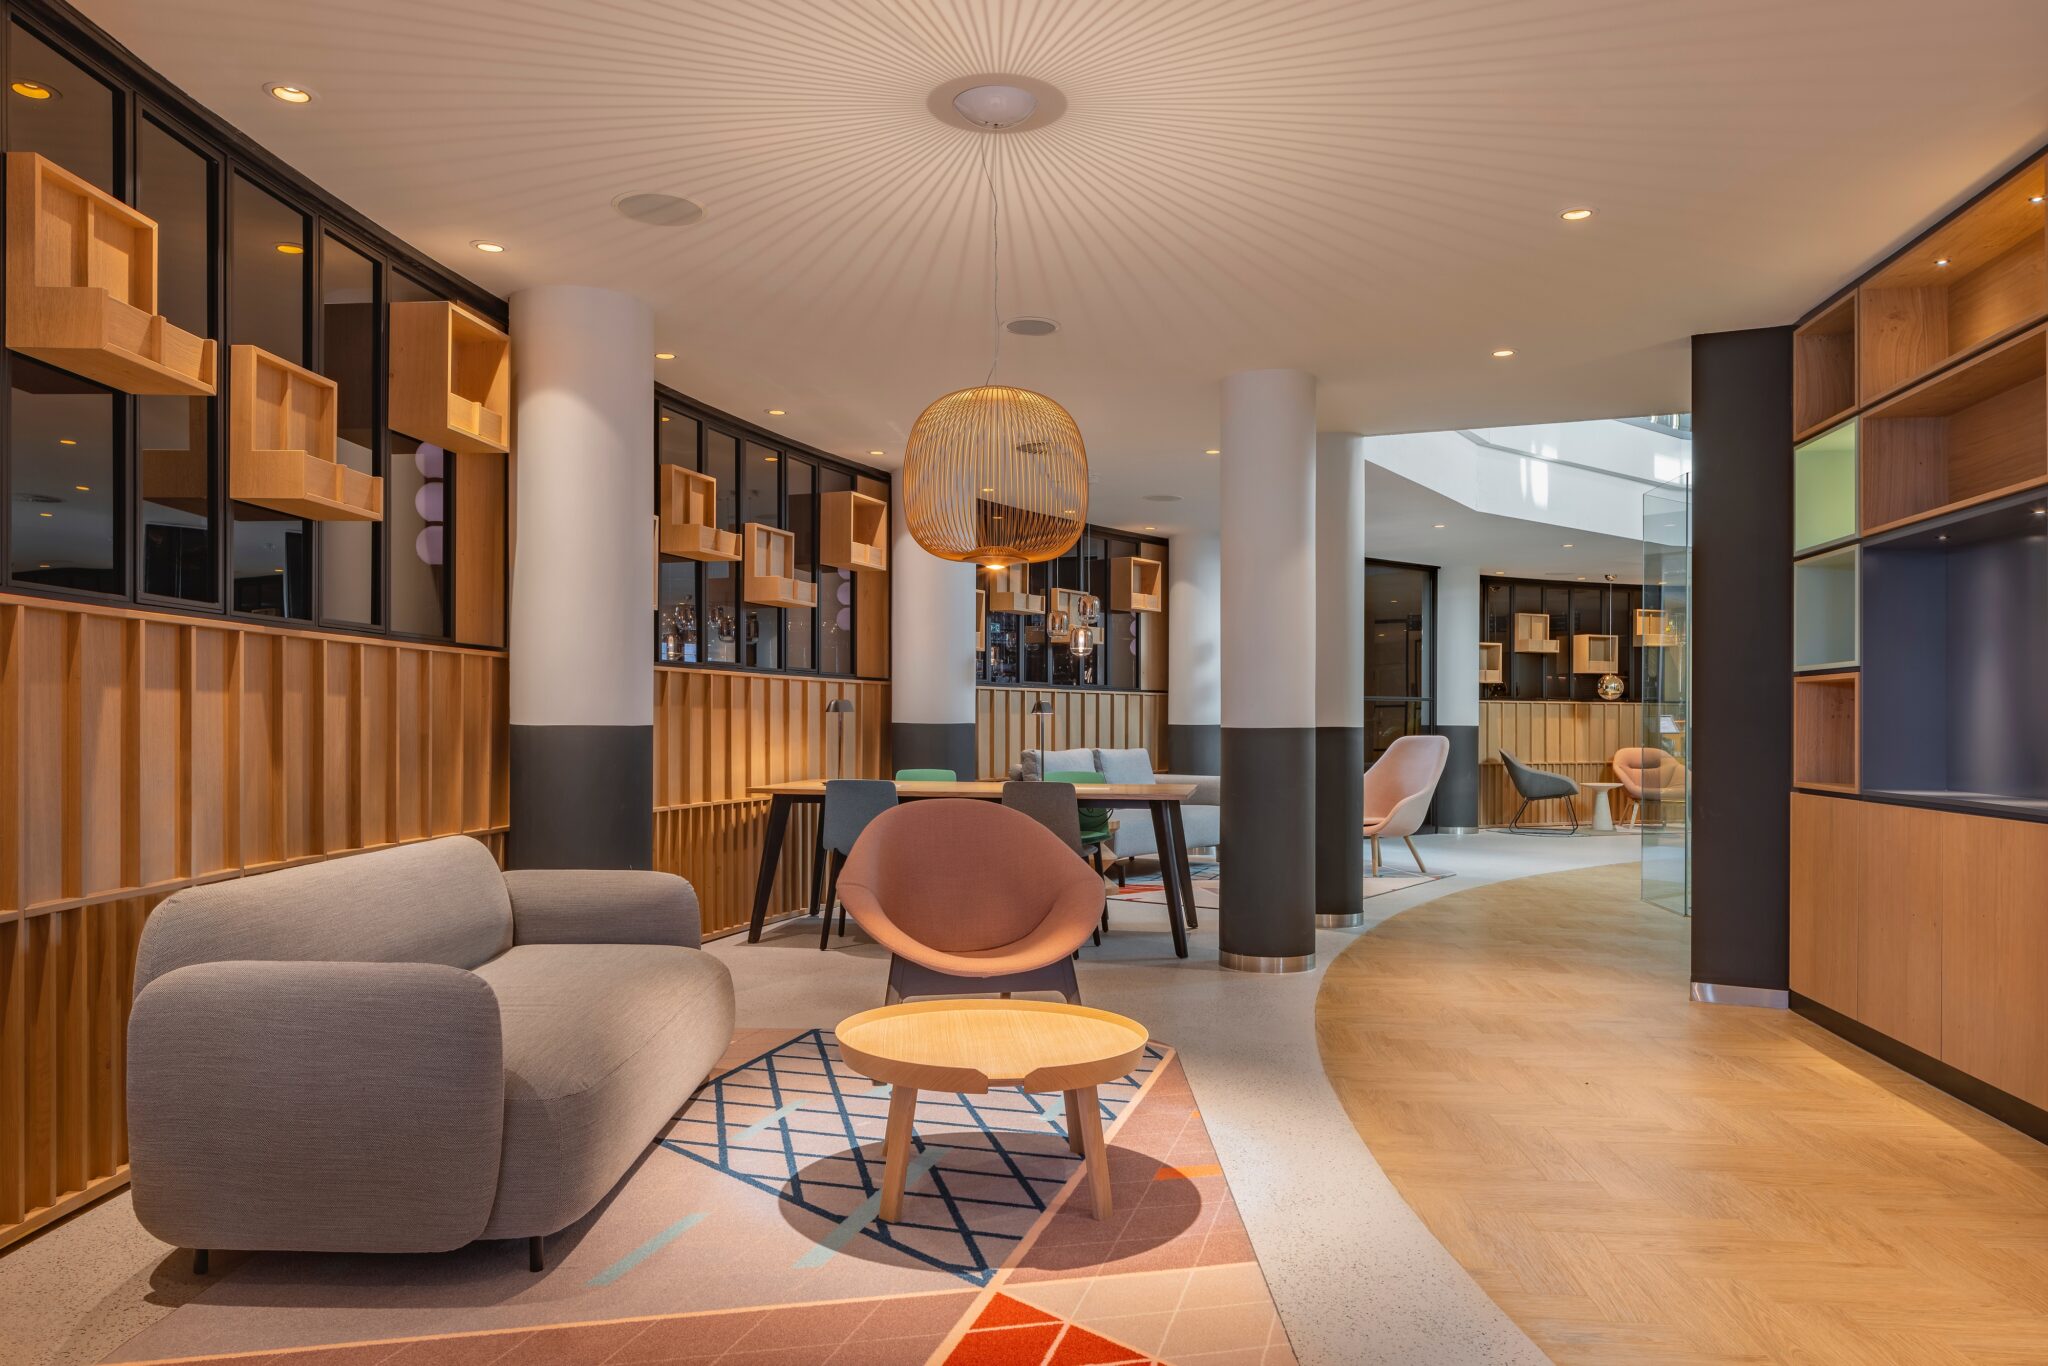  Holiday Inn Voorburg: eigentijdse kwaliteit en comfort